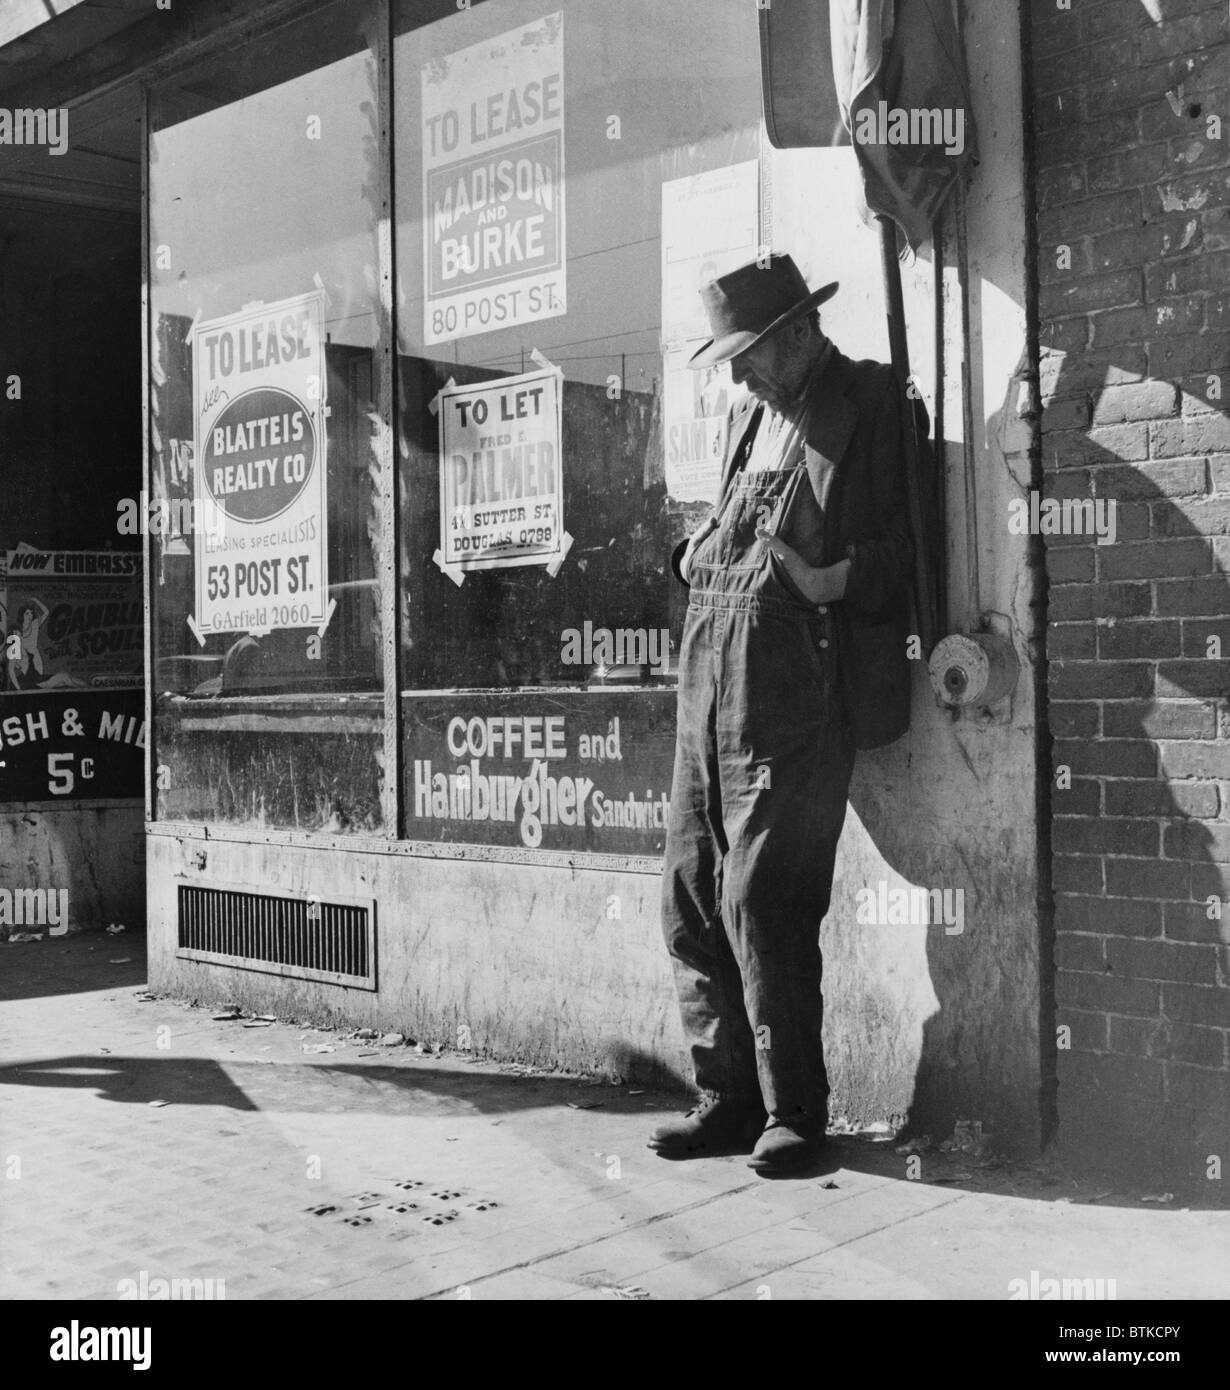 Einsamer Mann im Bauern Overall, auf San Franciscos Skid Row in der Howard Street. Zerstörte Bauern aus dem mittleren Westen hinzugefügt, um die Obdachlosen und Arbeitslosen Bevölkerung in Kalifornien während der großen Depression. Februar 1936 Foto von Dorothea Lange. Stockfoto